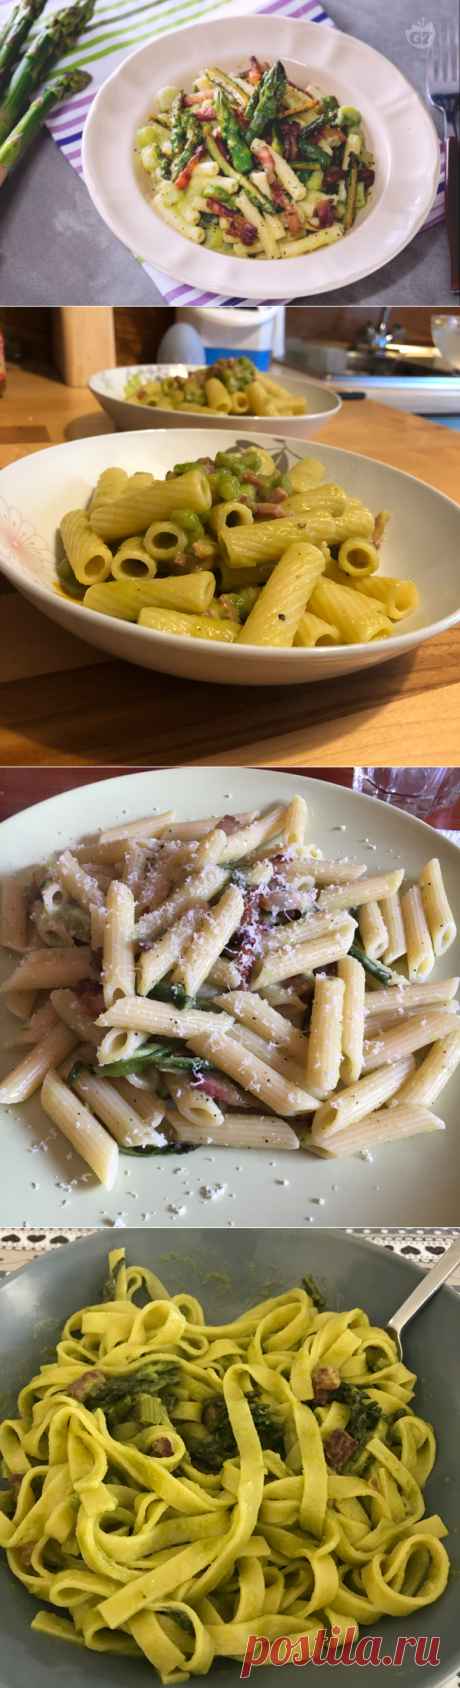 Ricetta Pasta con asparagi e pancetta - La Ricetta di GialloZafferano